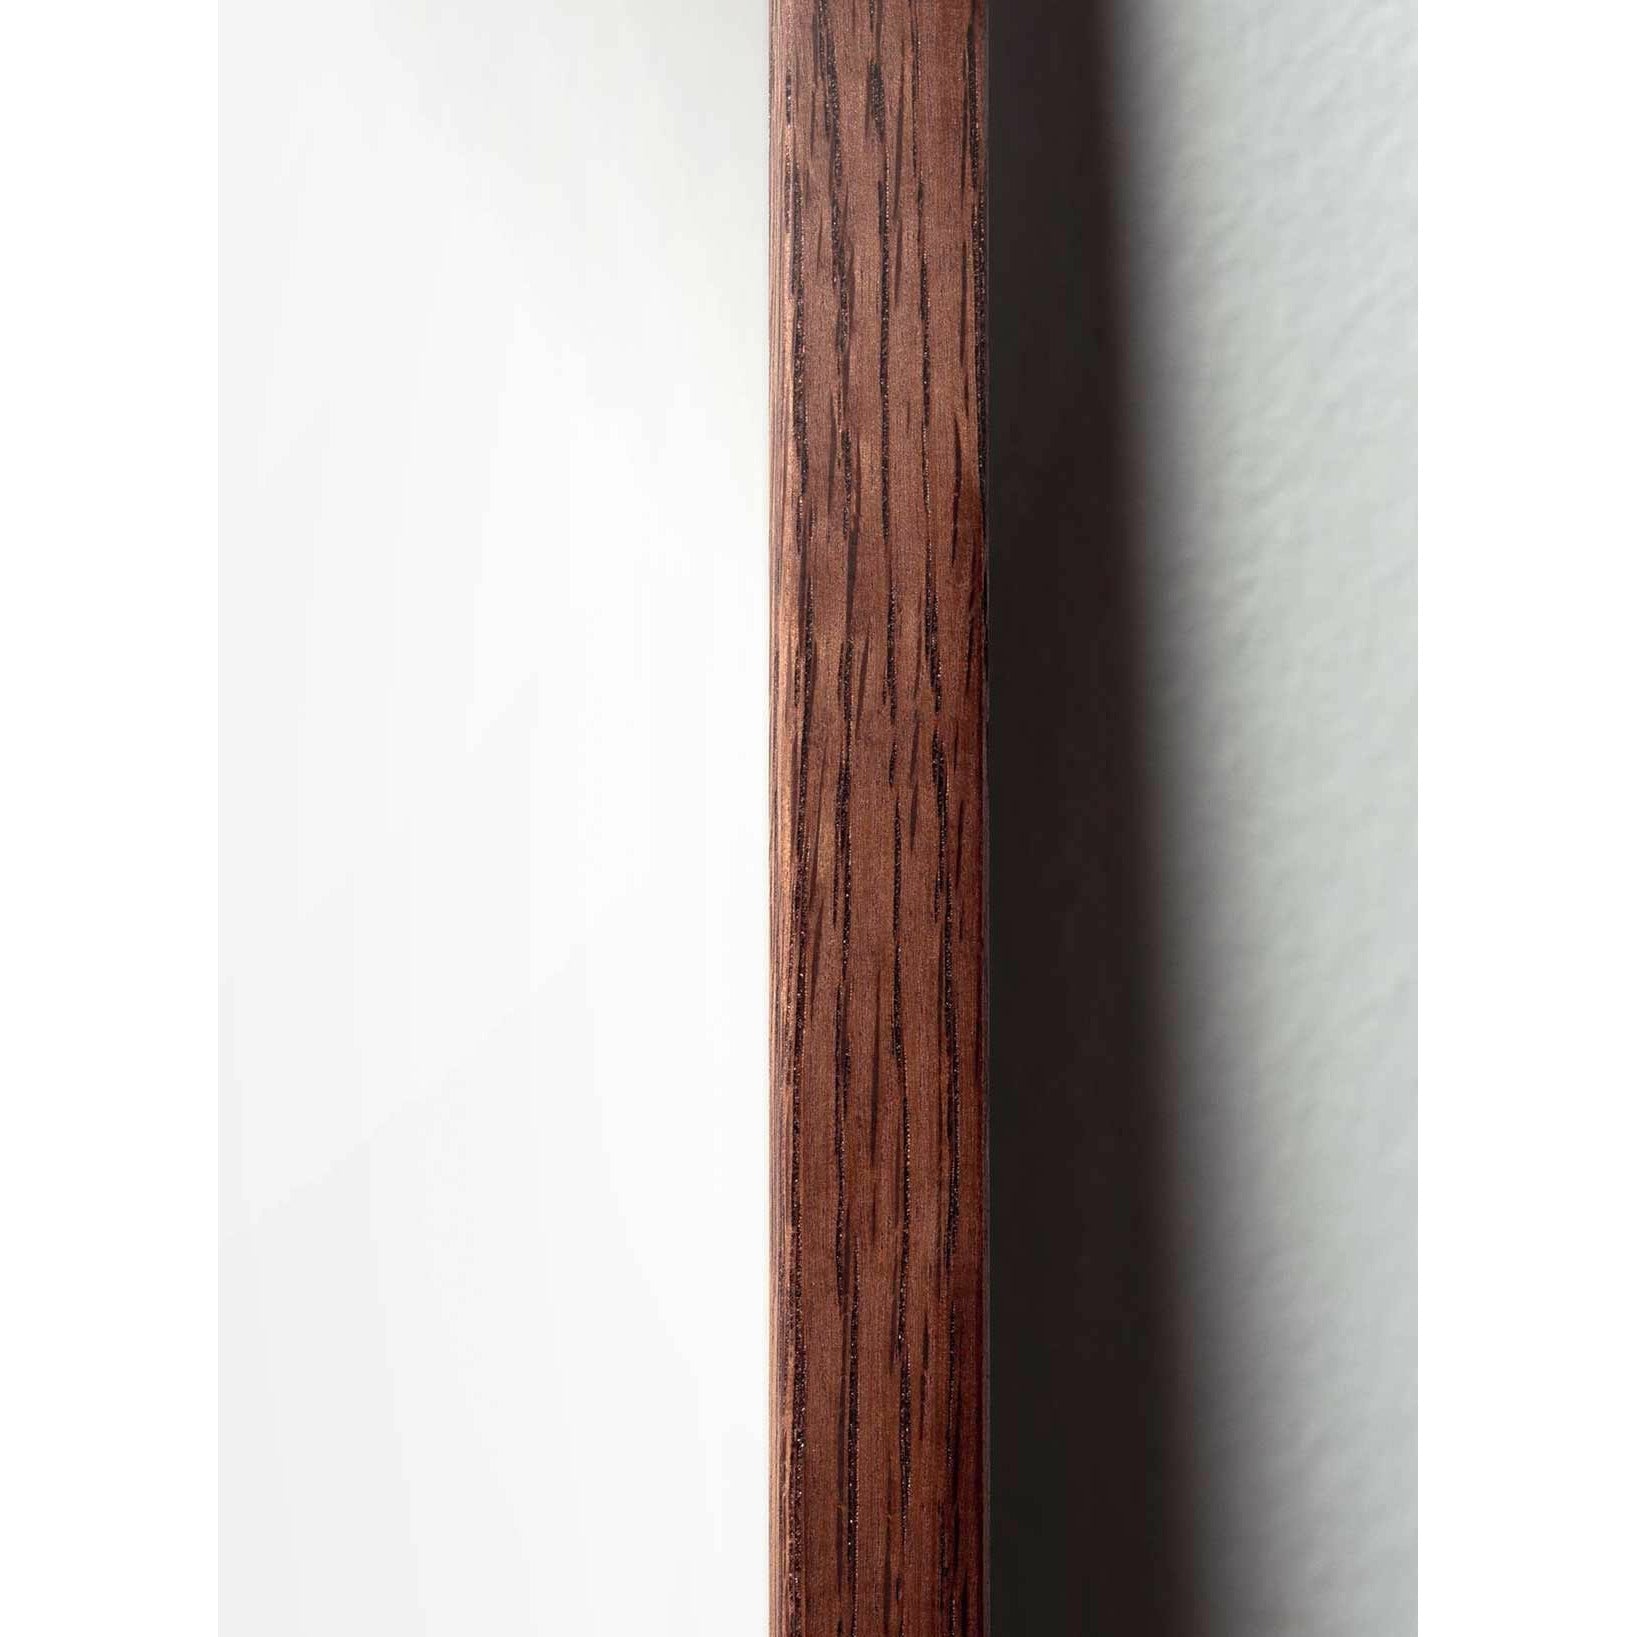 Póster clásico de hormigas de creación, marco de madera oscura A5, fondo blanco